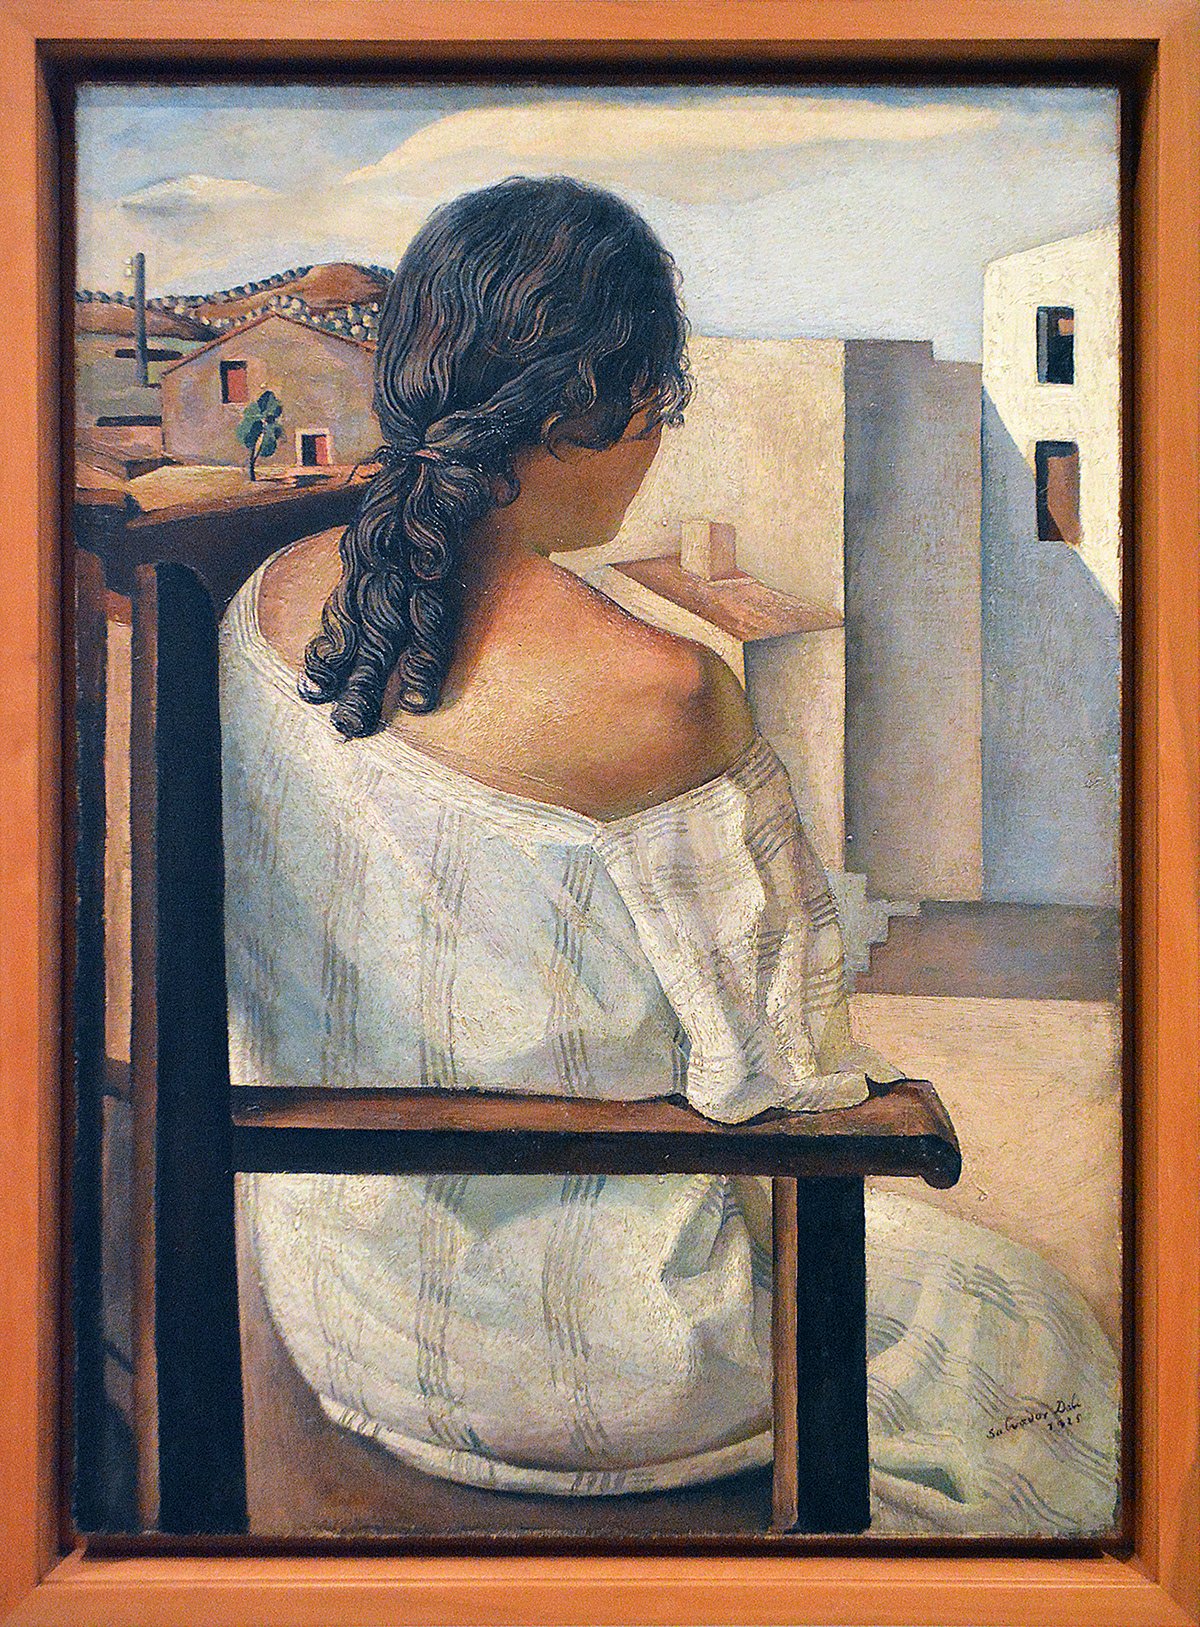 Изображение женской фигуры, стоящей у окна, сальвадорских мотивов.